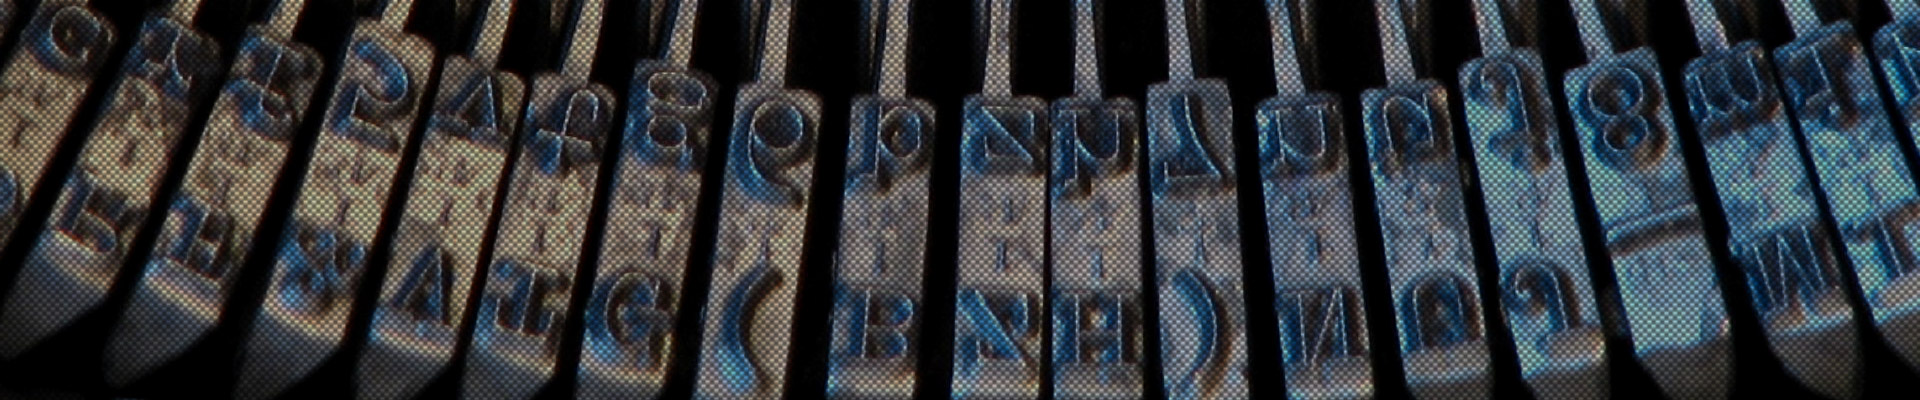 Letras de una máquina de escribir antigua.